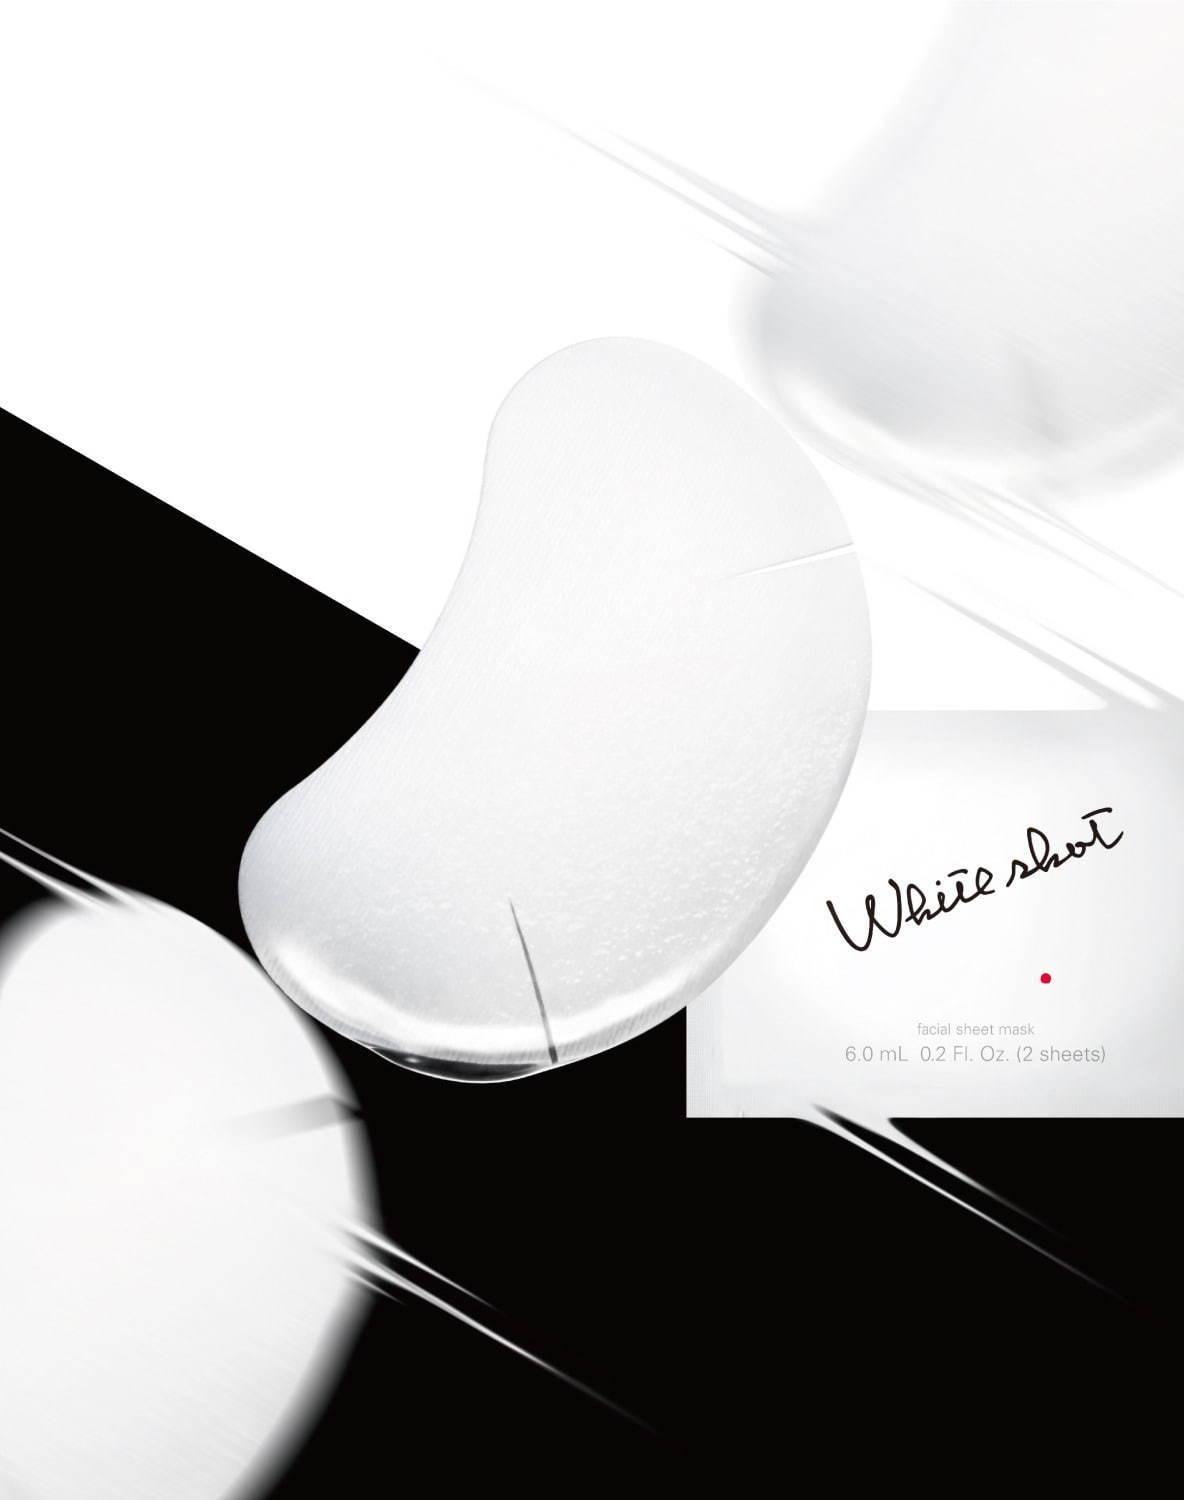 ポーラ「ホワイトショット」の美白シートマスク新発売、優れた即効性&輝くクリアな肌に コピー